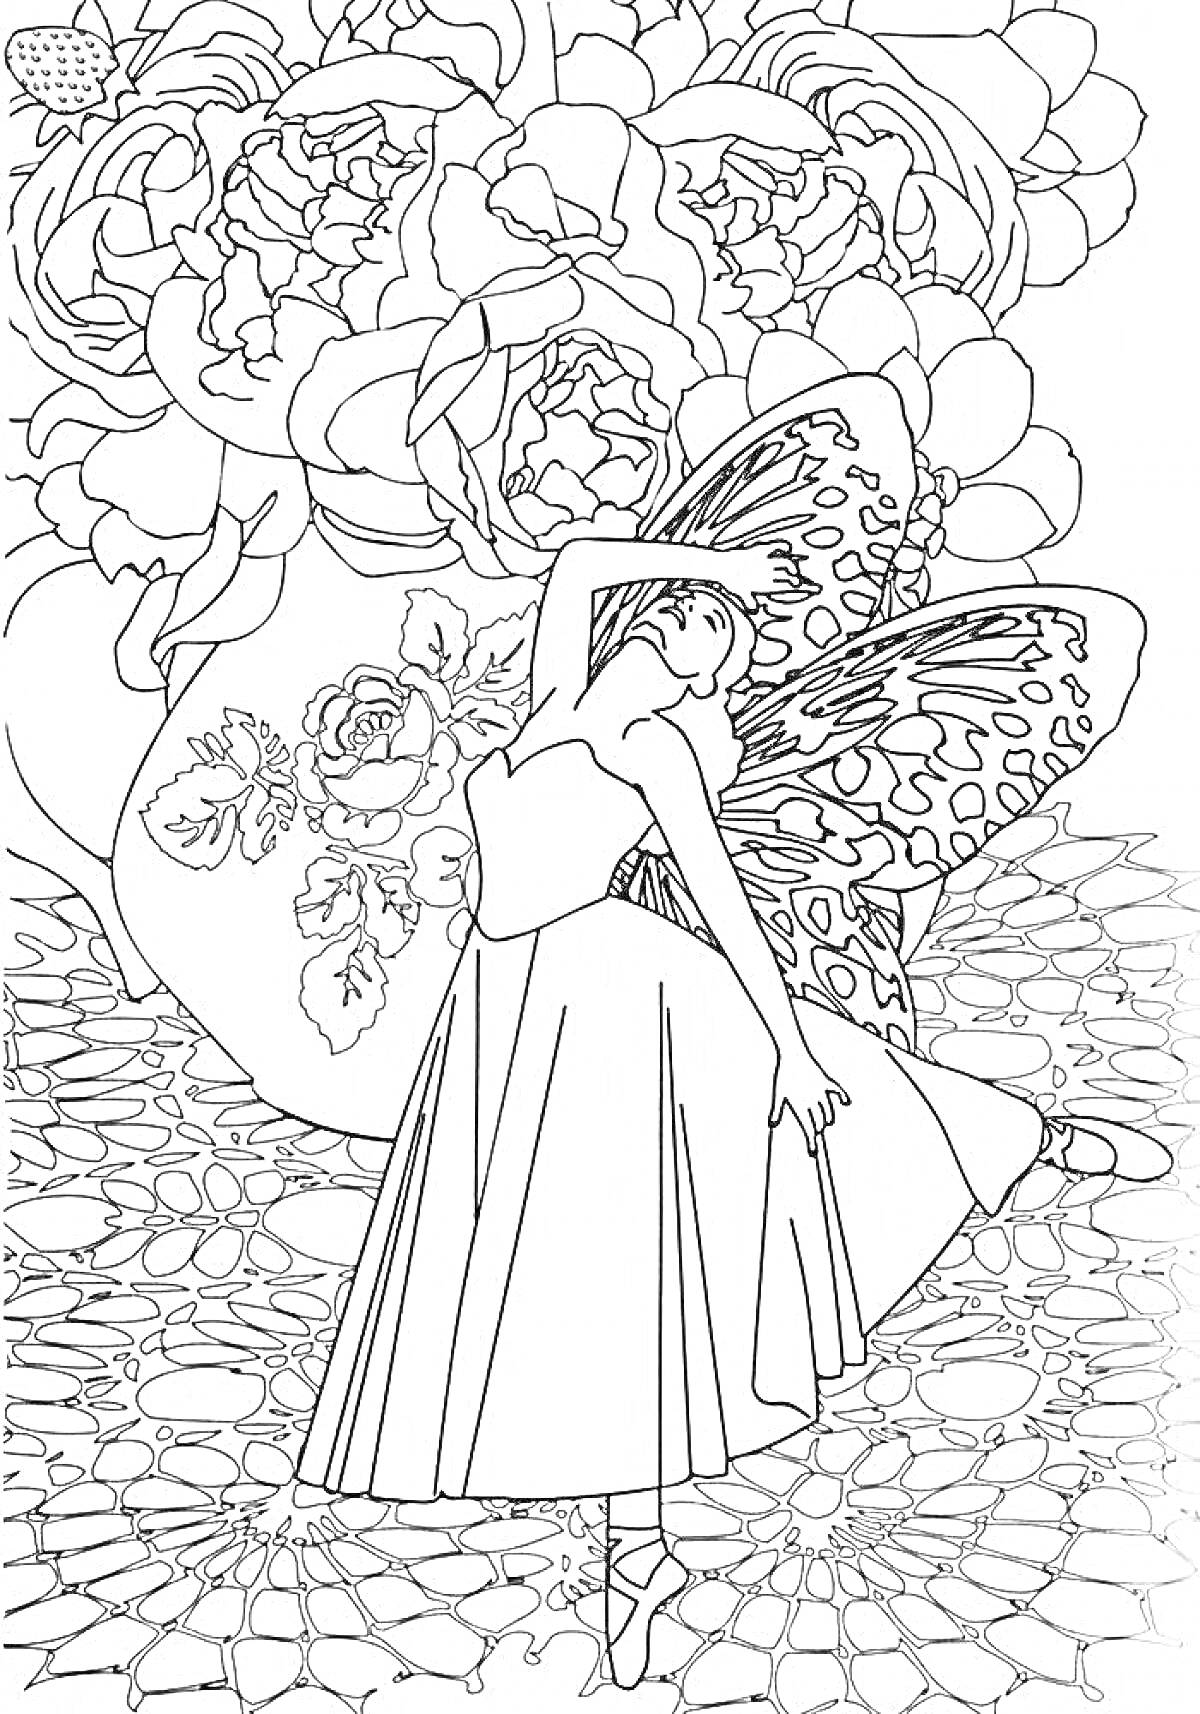 Раскраска Фея с крыльями танцует на ажурной поверхности на фоне букета цветов в вазе